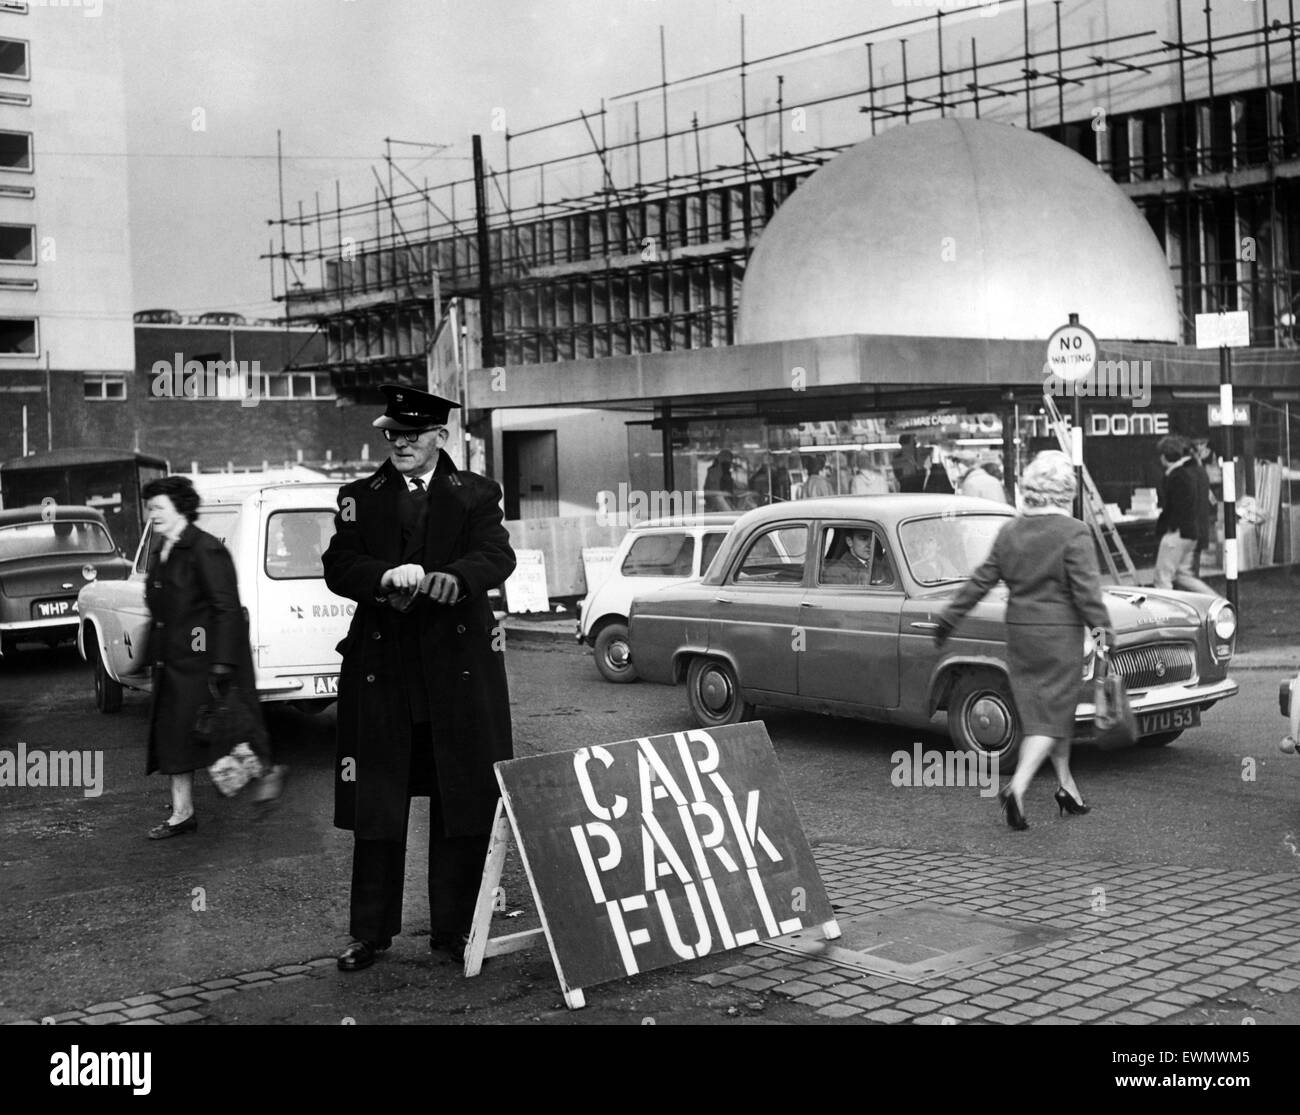 Un signo de Navidad, tan temprano como a las diez de la mañana, el Coventry Corporation parking attendant poner un "Aparcamiento" completa el aviso en el bull Yard car park. Coventry, circa 1965. Foto de stock